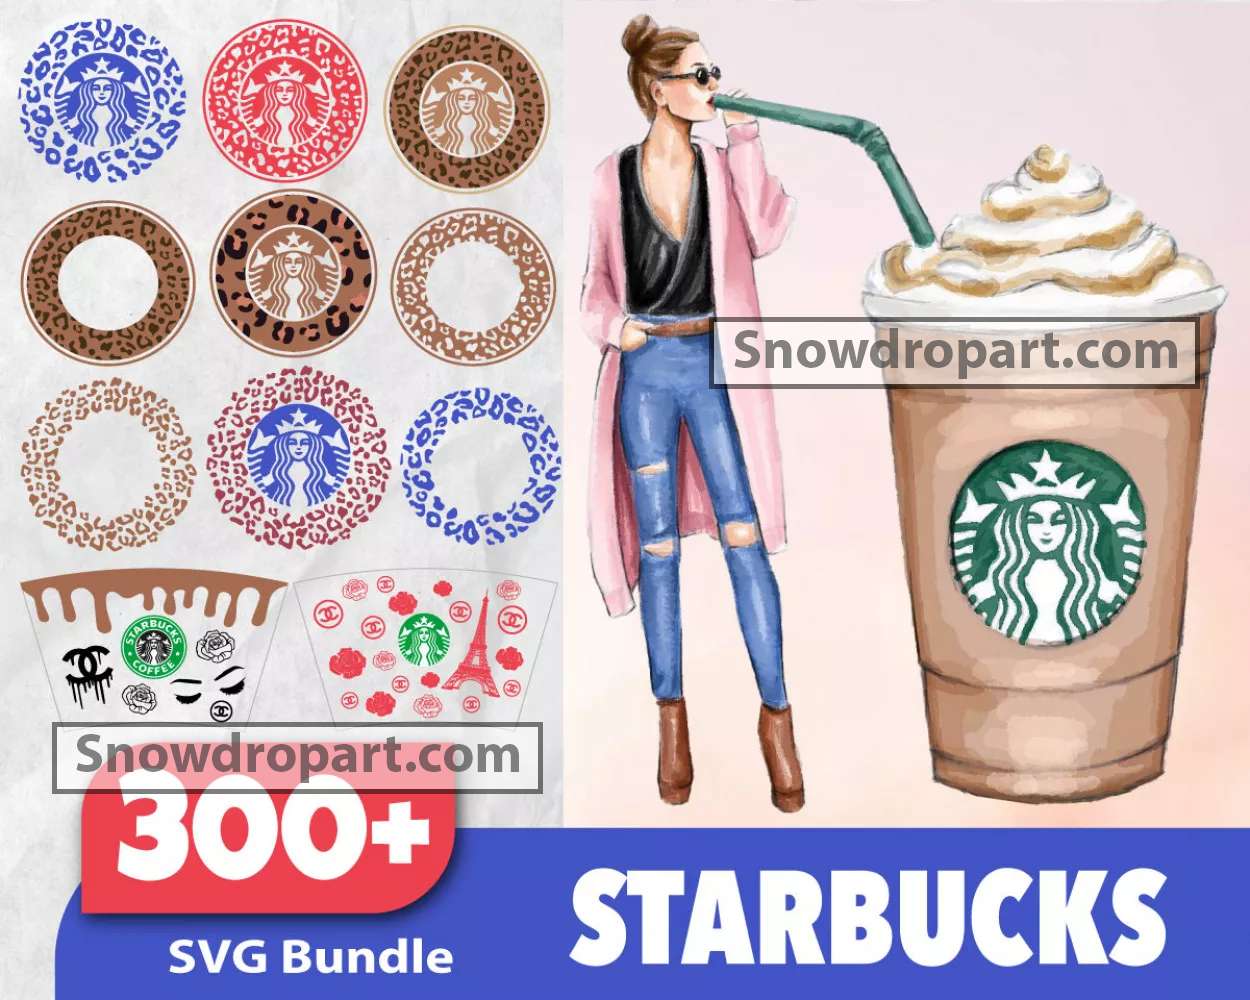 Huge Starbucks SVG Bundle +1500